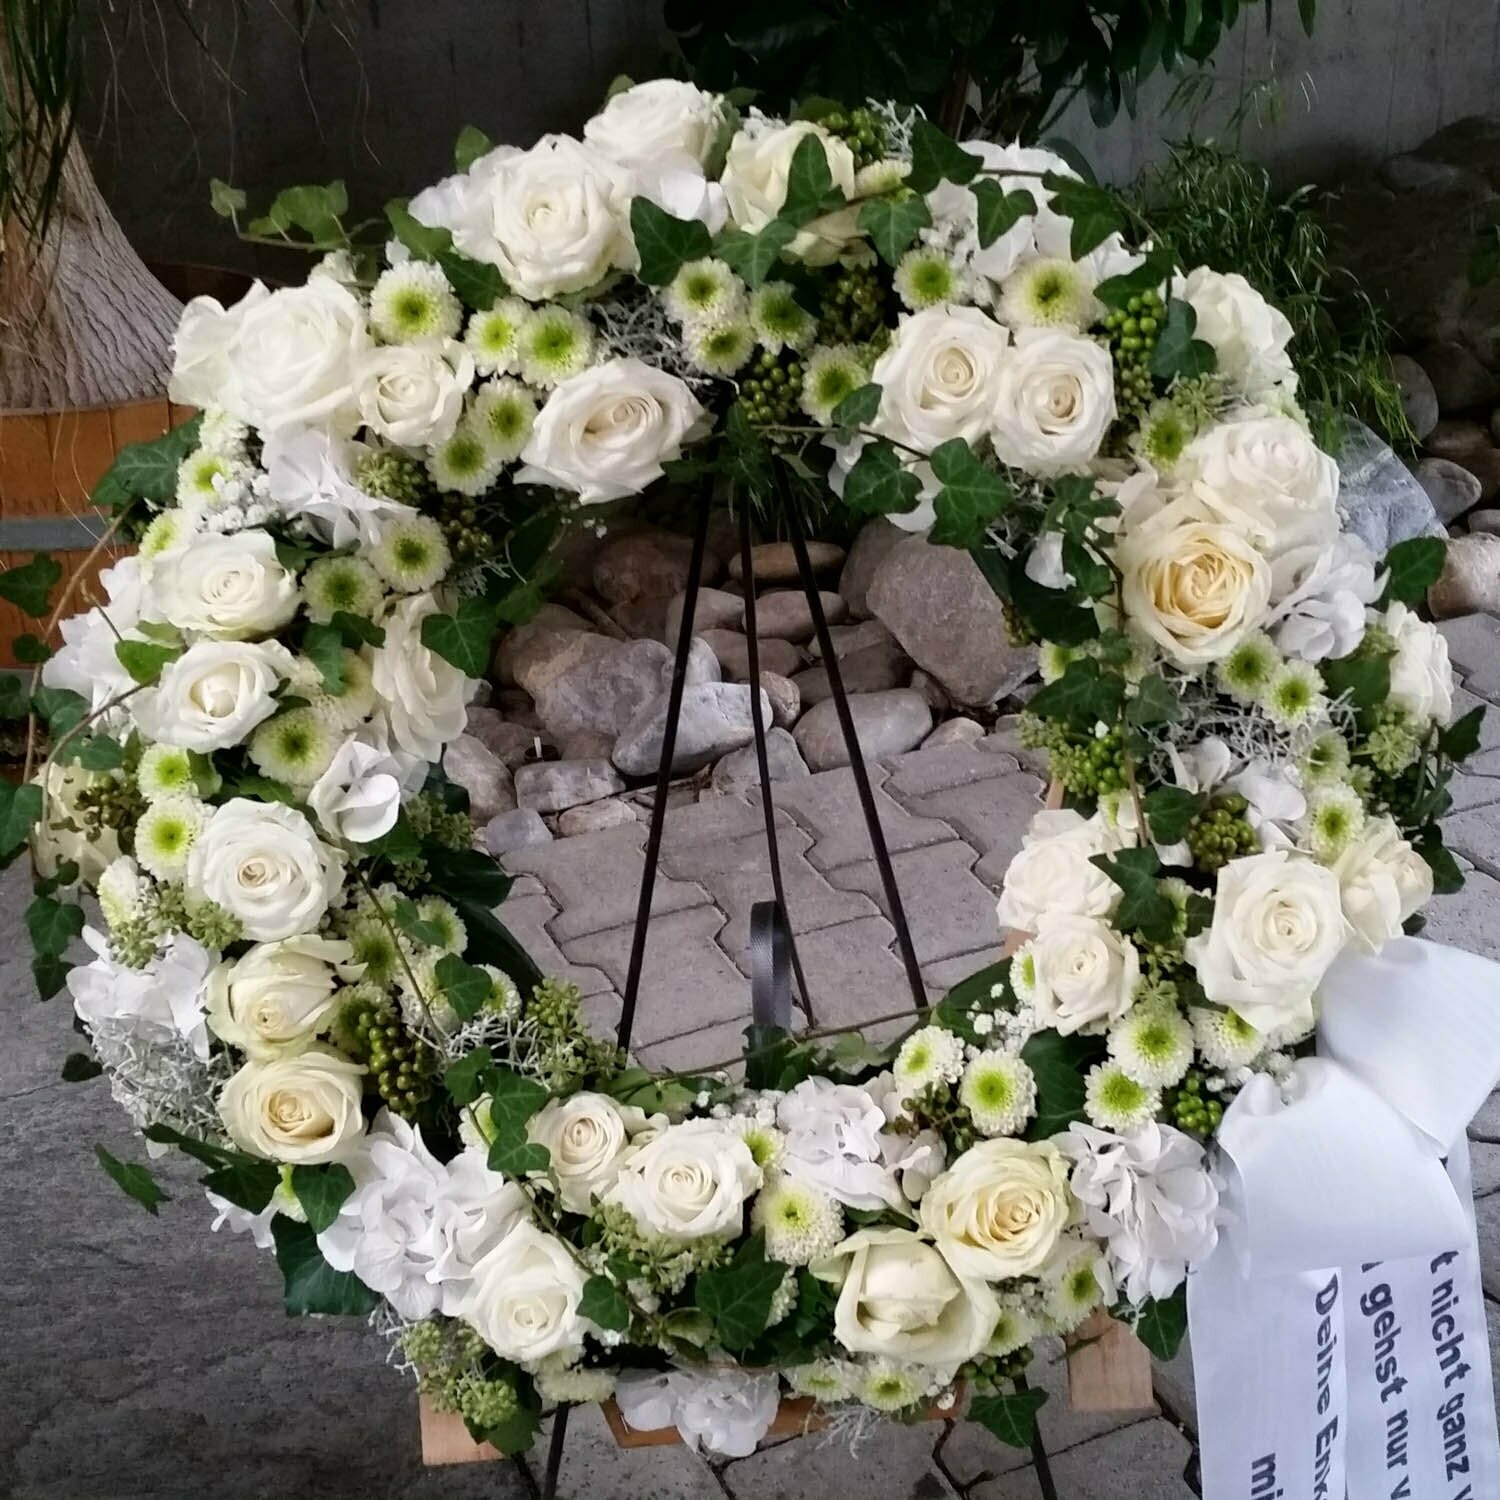 Trauer-Kranz, Blütenkranz weiß-grün, ca. 70 cm